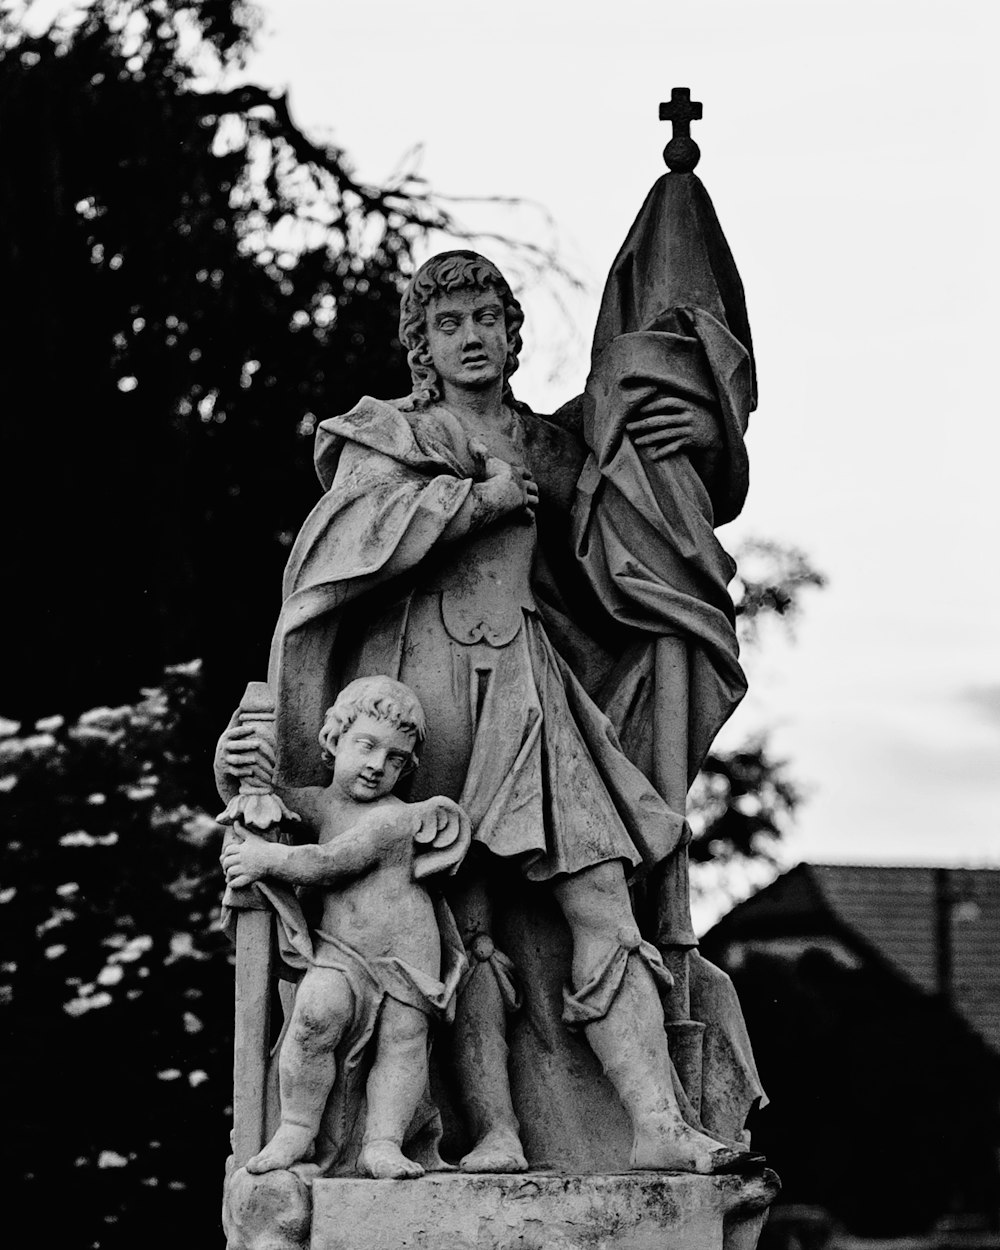 아이를 안고 있는 여자의 동상